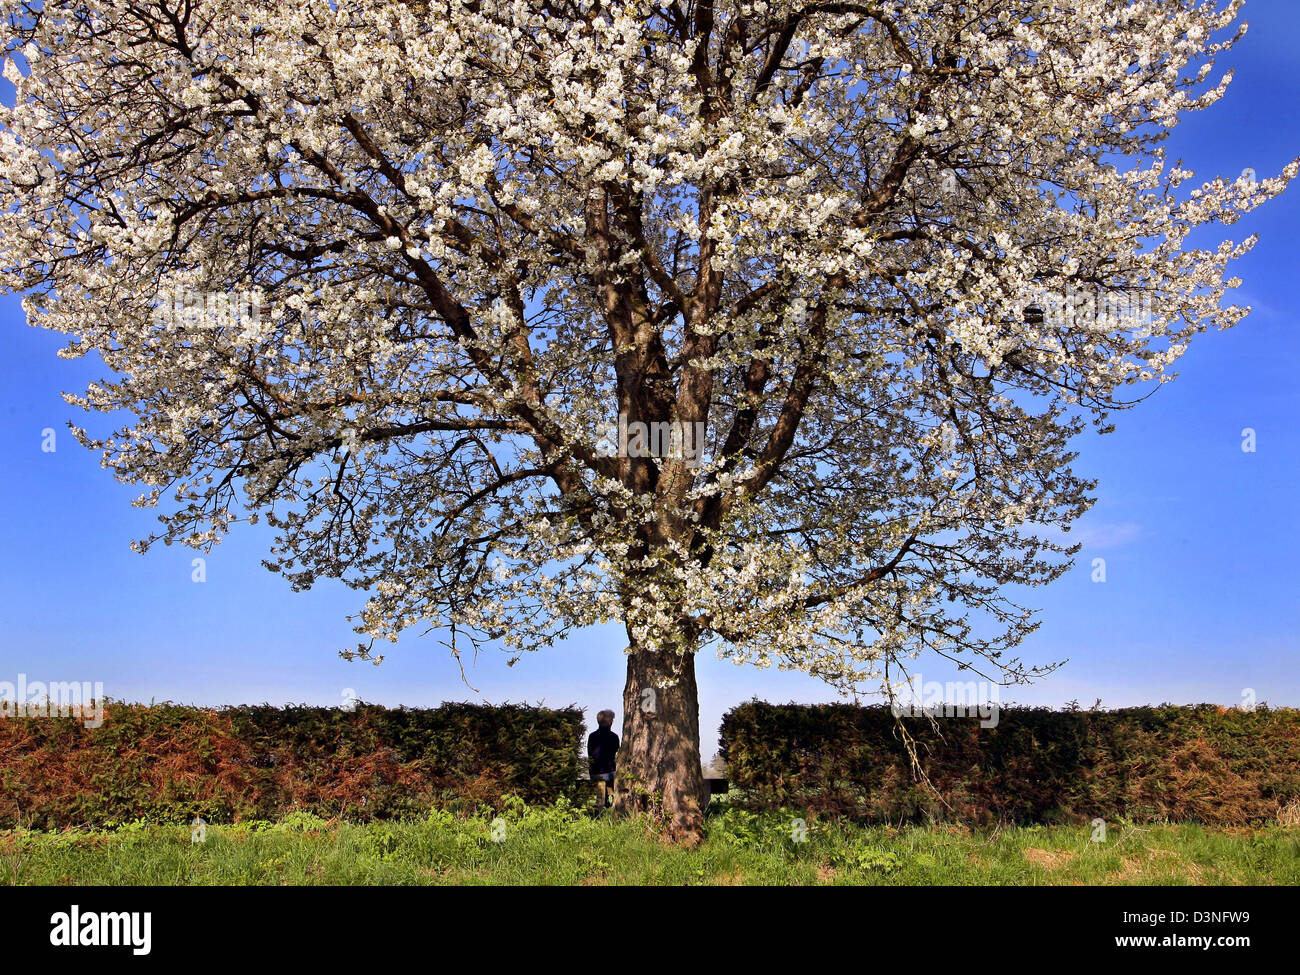 Una donna prende un riposo sotto un selvaggio fiore ciliegio in Greifenberg, Germania, giovedì 4 maggio 2006. Alta 'paul' porta il sole e temperature fino a 25 gradi Celsius in Baviera. Il fine settimana le temperature di andare giù un po'. Foto: Karl-Josef Hildenbrand Foto Stock